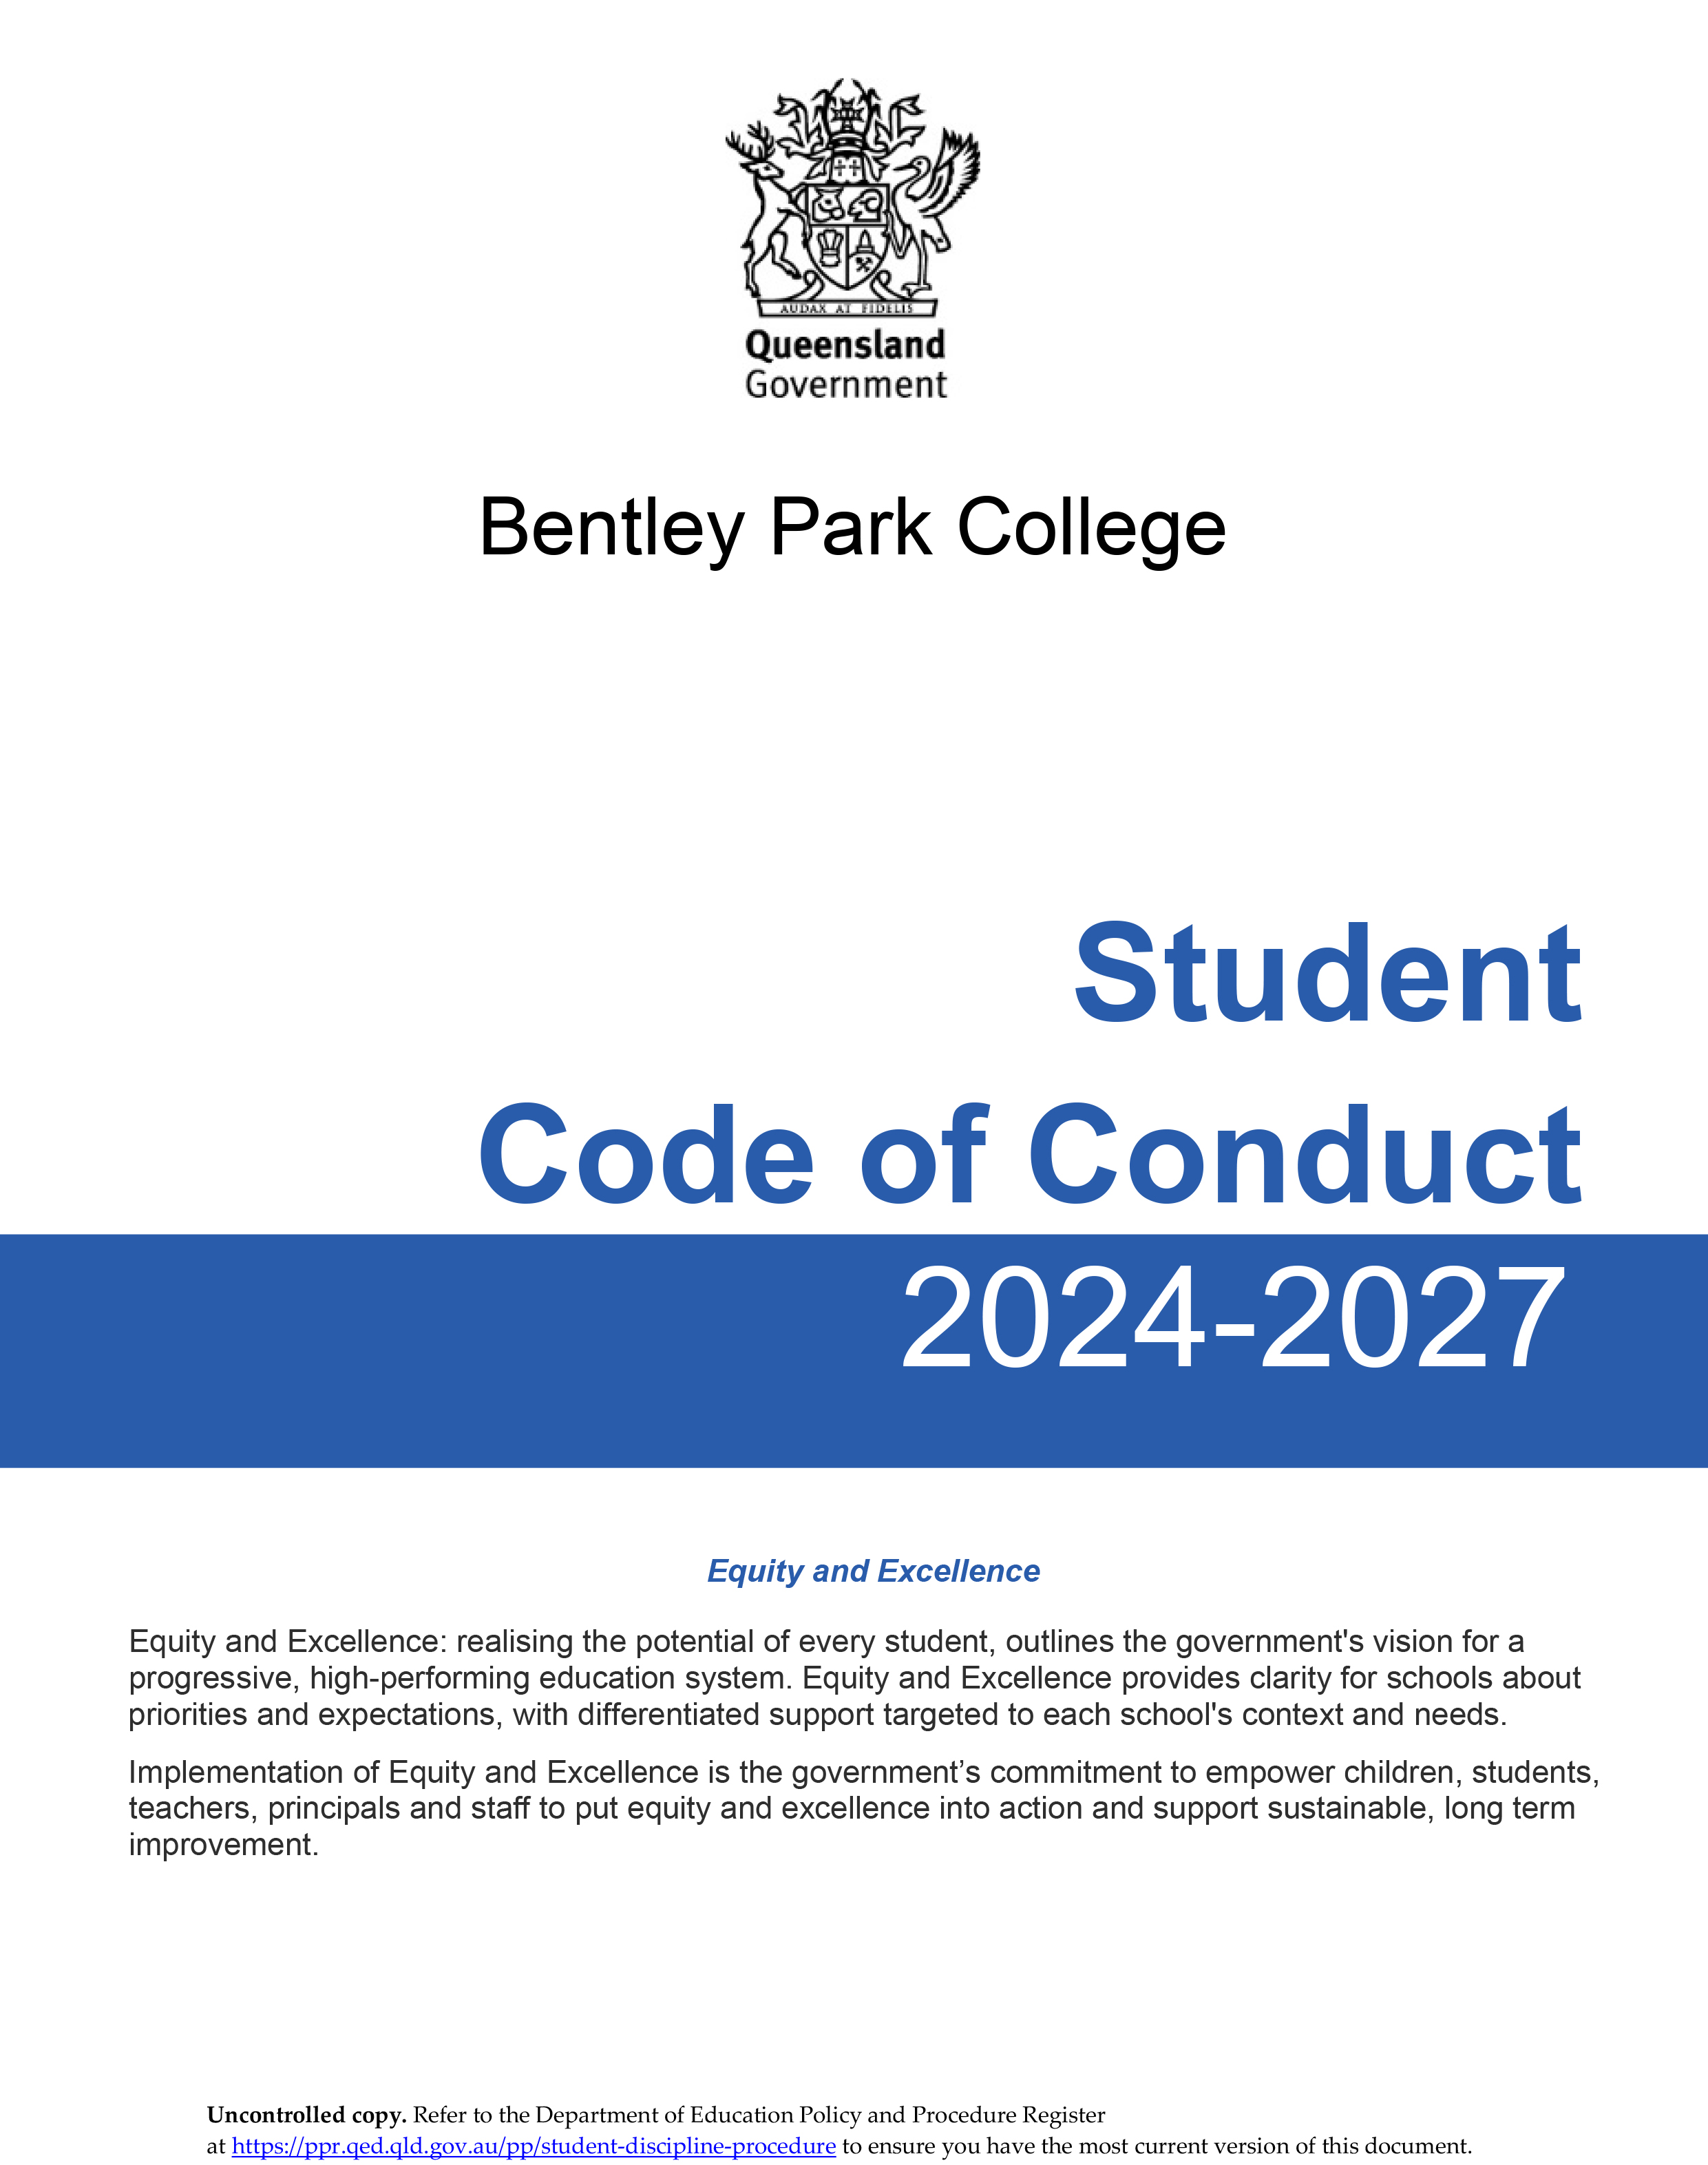 bpc-student-code-of-conduct-1.jpg